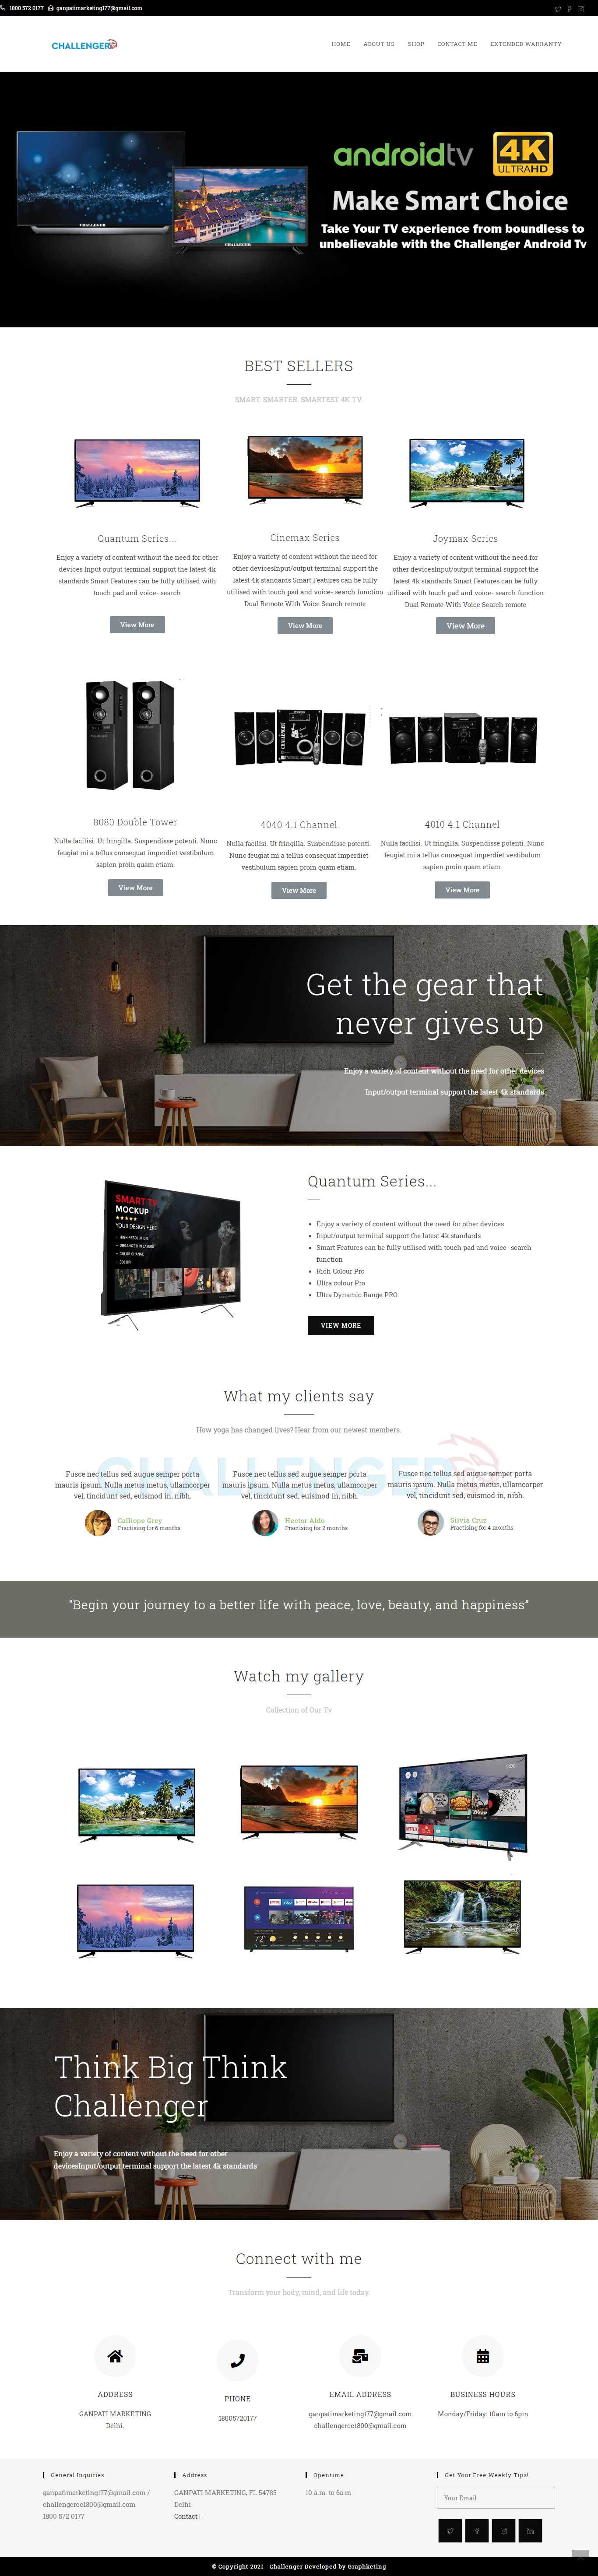 Website layout